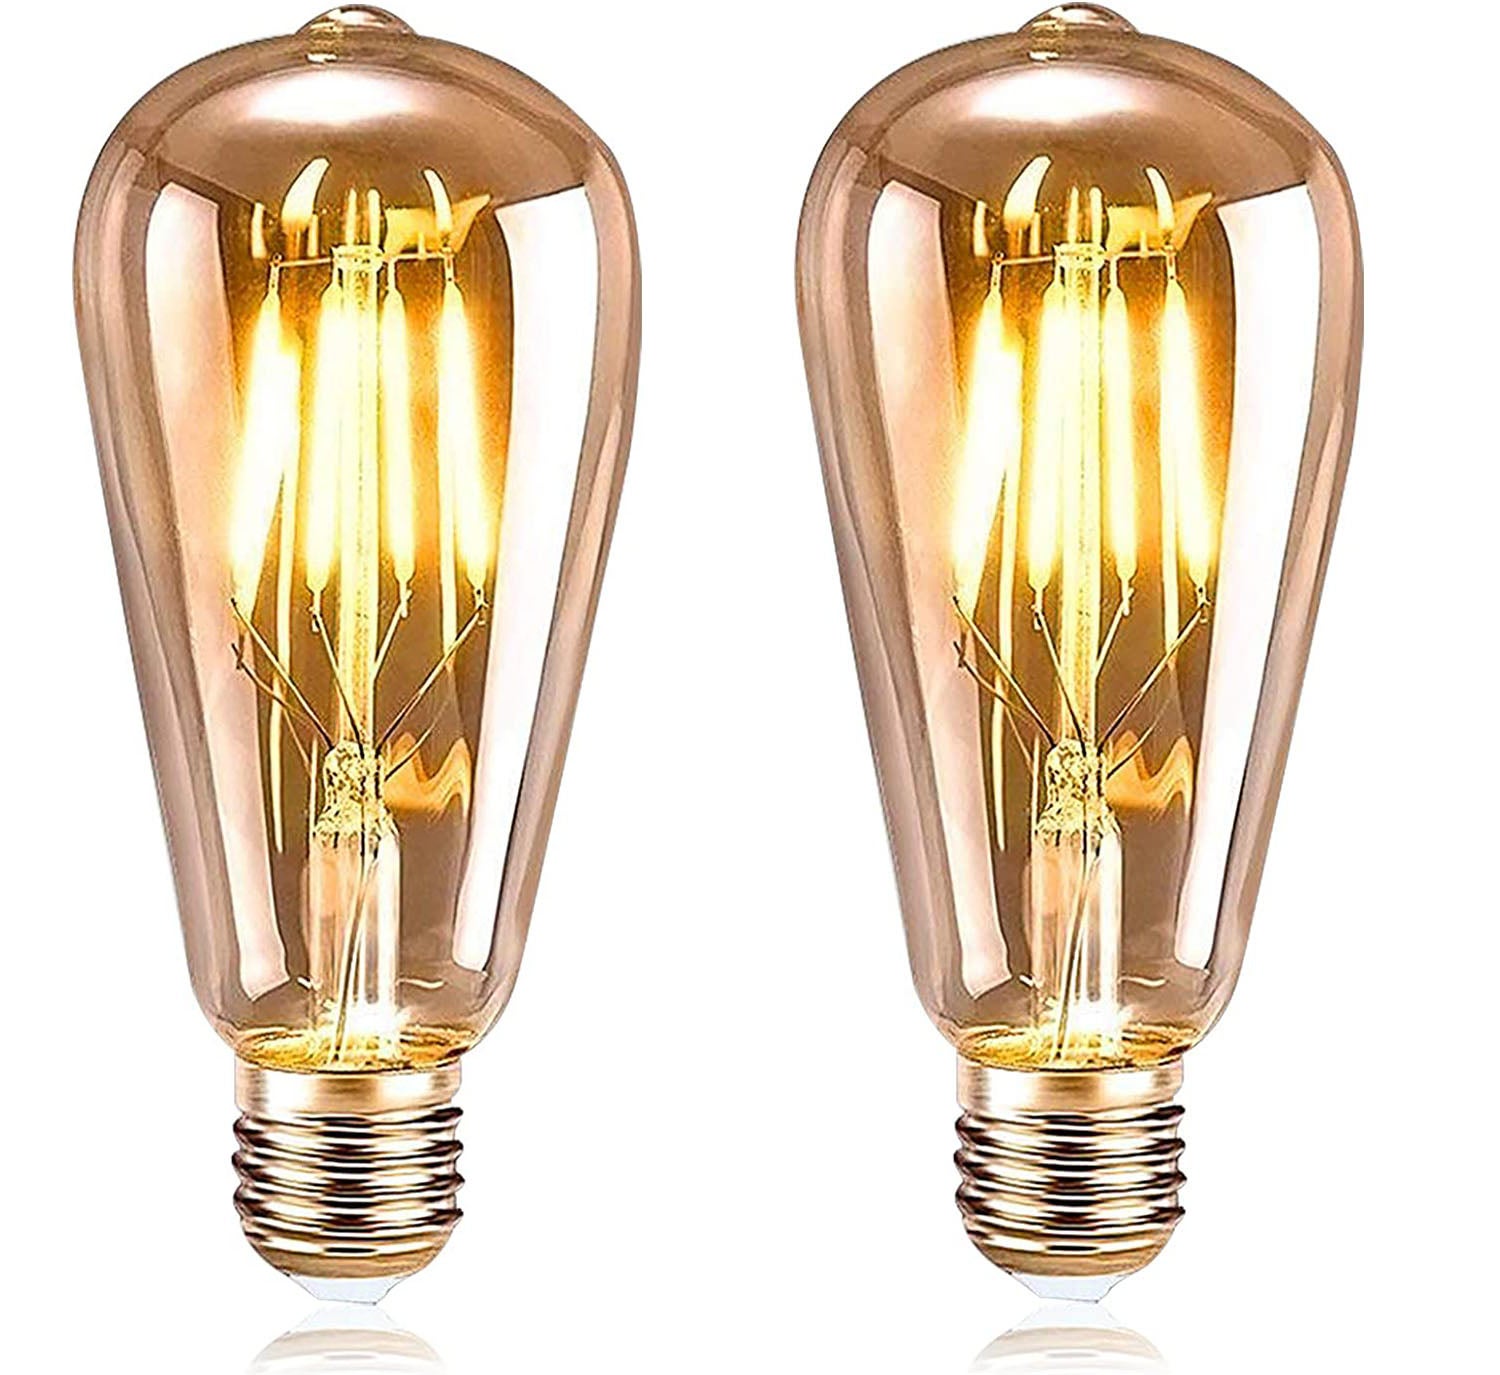 BESLAM Ampoule LED E27 ST64 Vintage, 6W 450LM Rétro Blanc Chaud Spirale  Filament à enroulement Lampe à vis Non Dimmable, Équivalent à incandescence  60W, 2500K Edison Ampoules de Verre, Lot de 6 